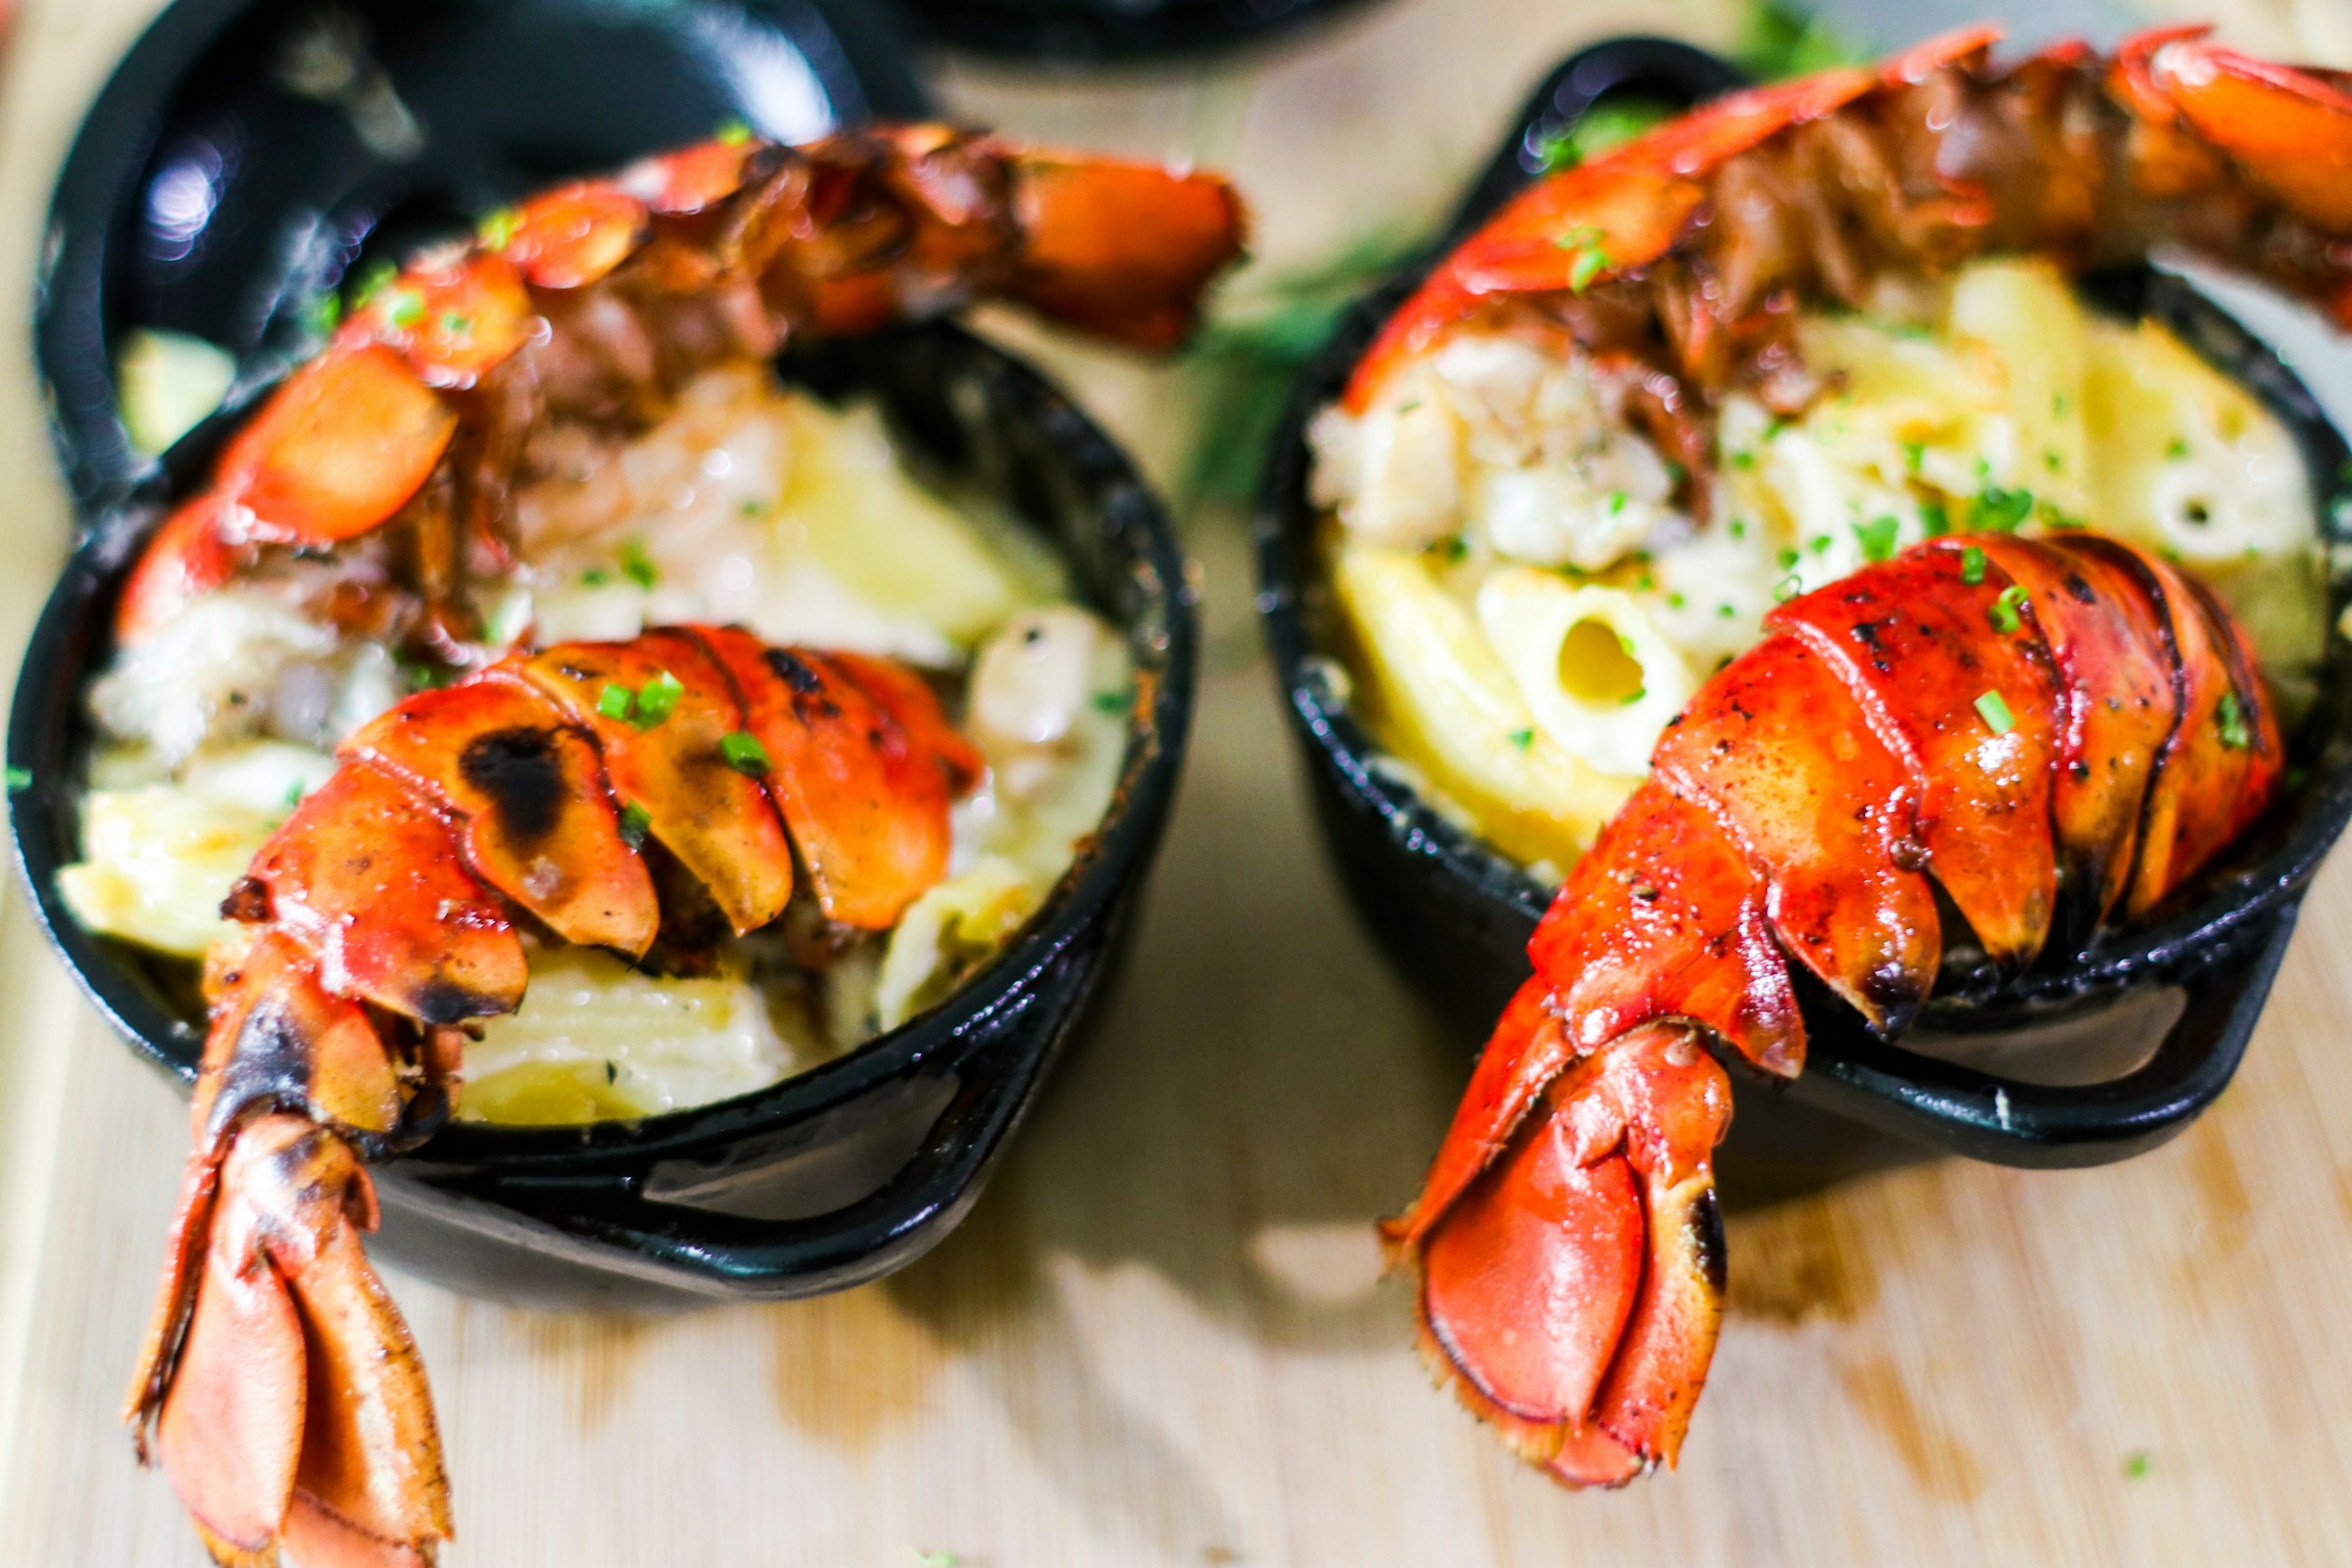 Plates of lobster | Source: Unsplash